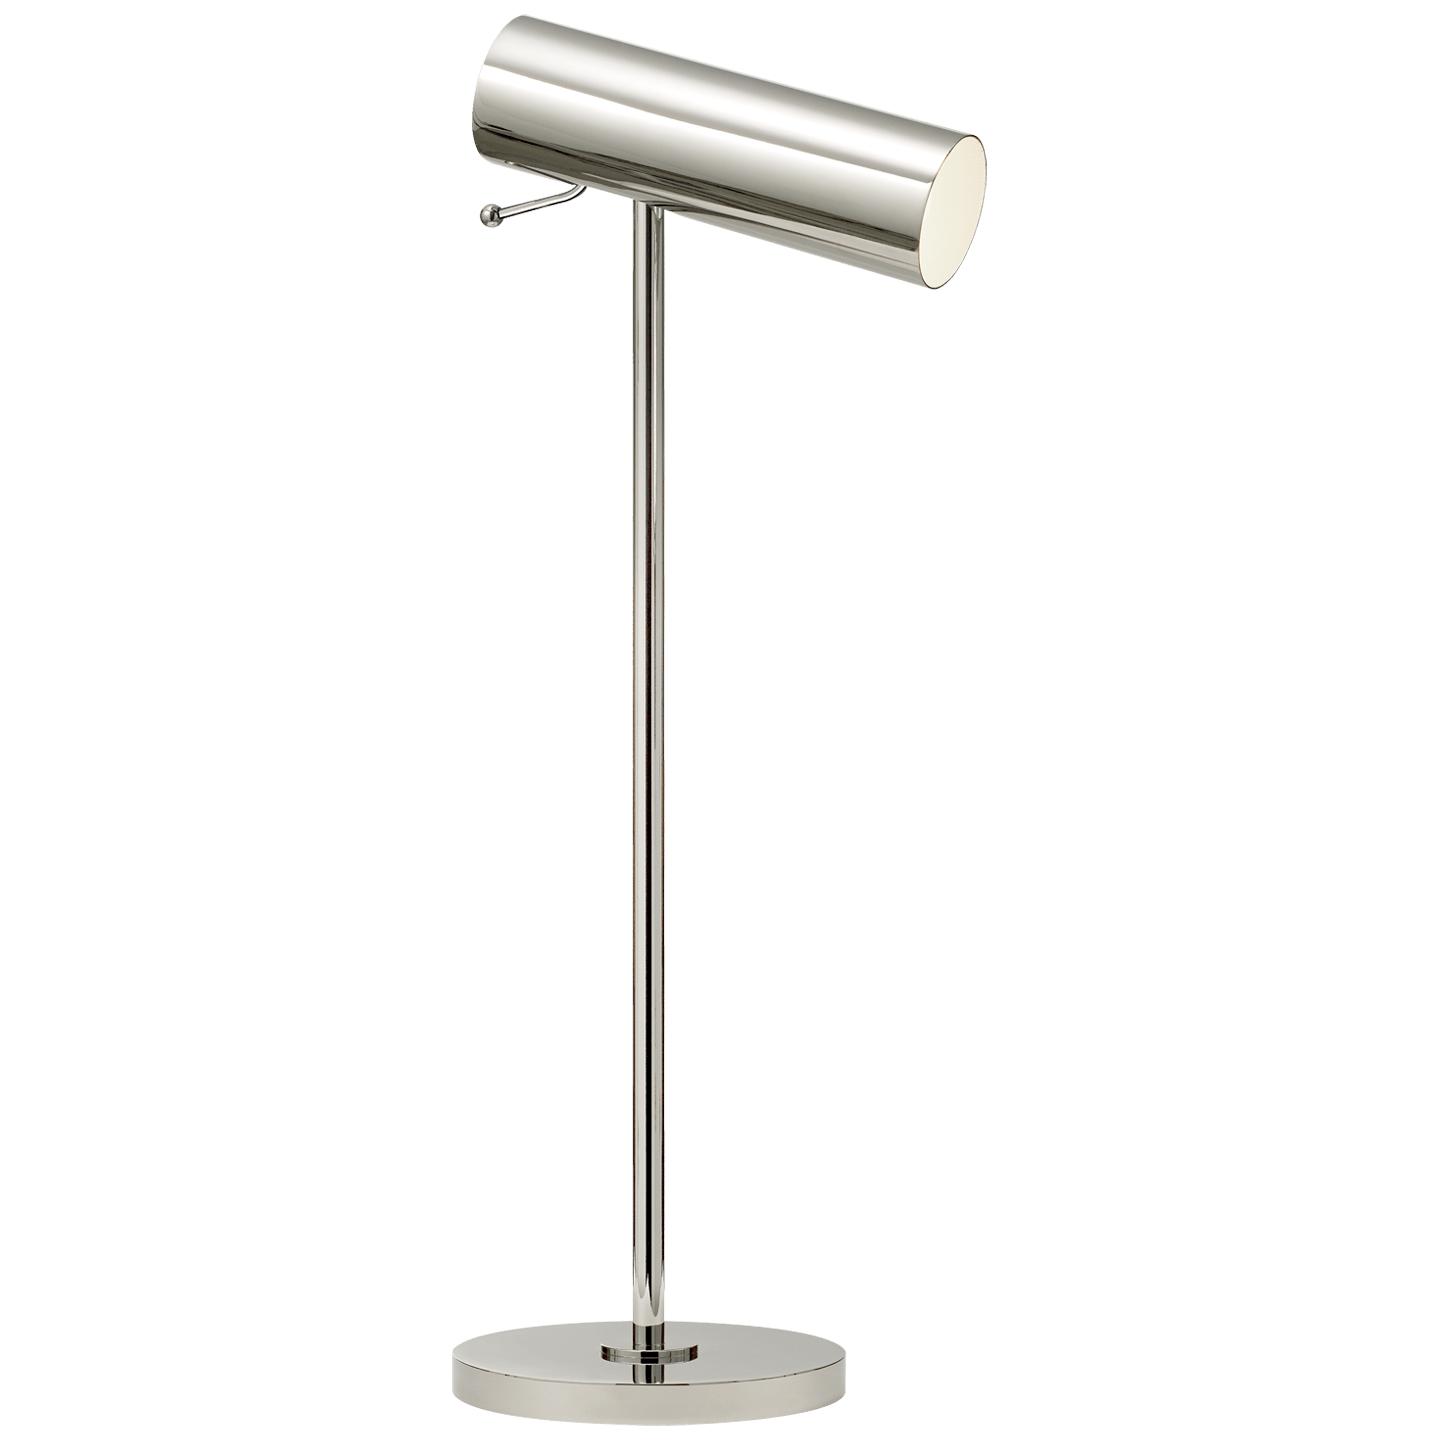 Купить Настольная лампа Lancelot Pivoting Desk Lamp в интернет-магазине roooms.ru